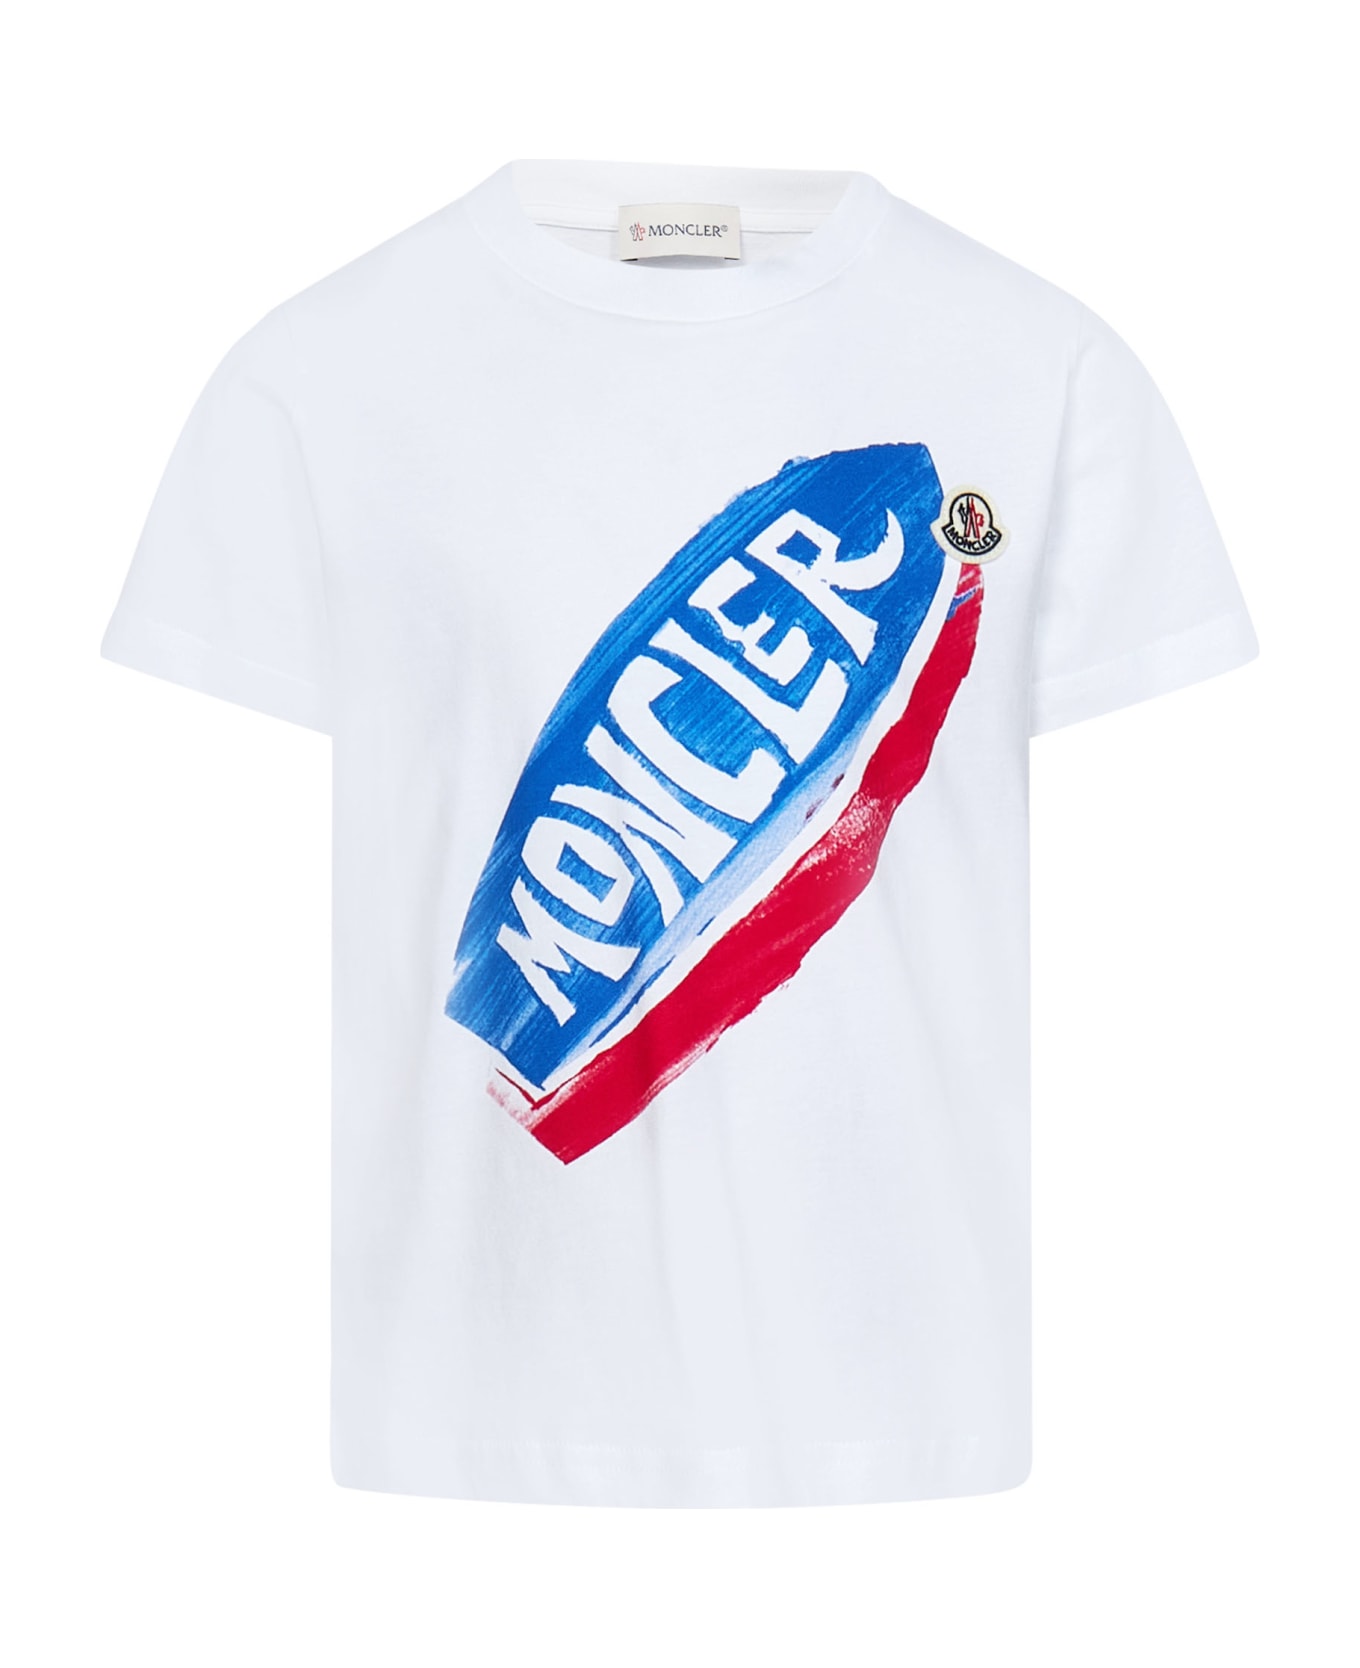 Moncler T-shirt